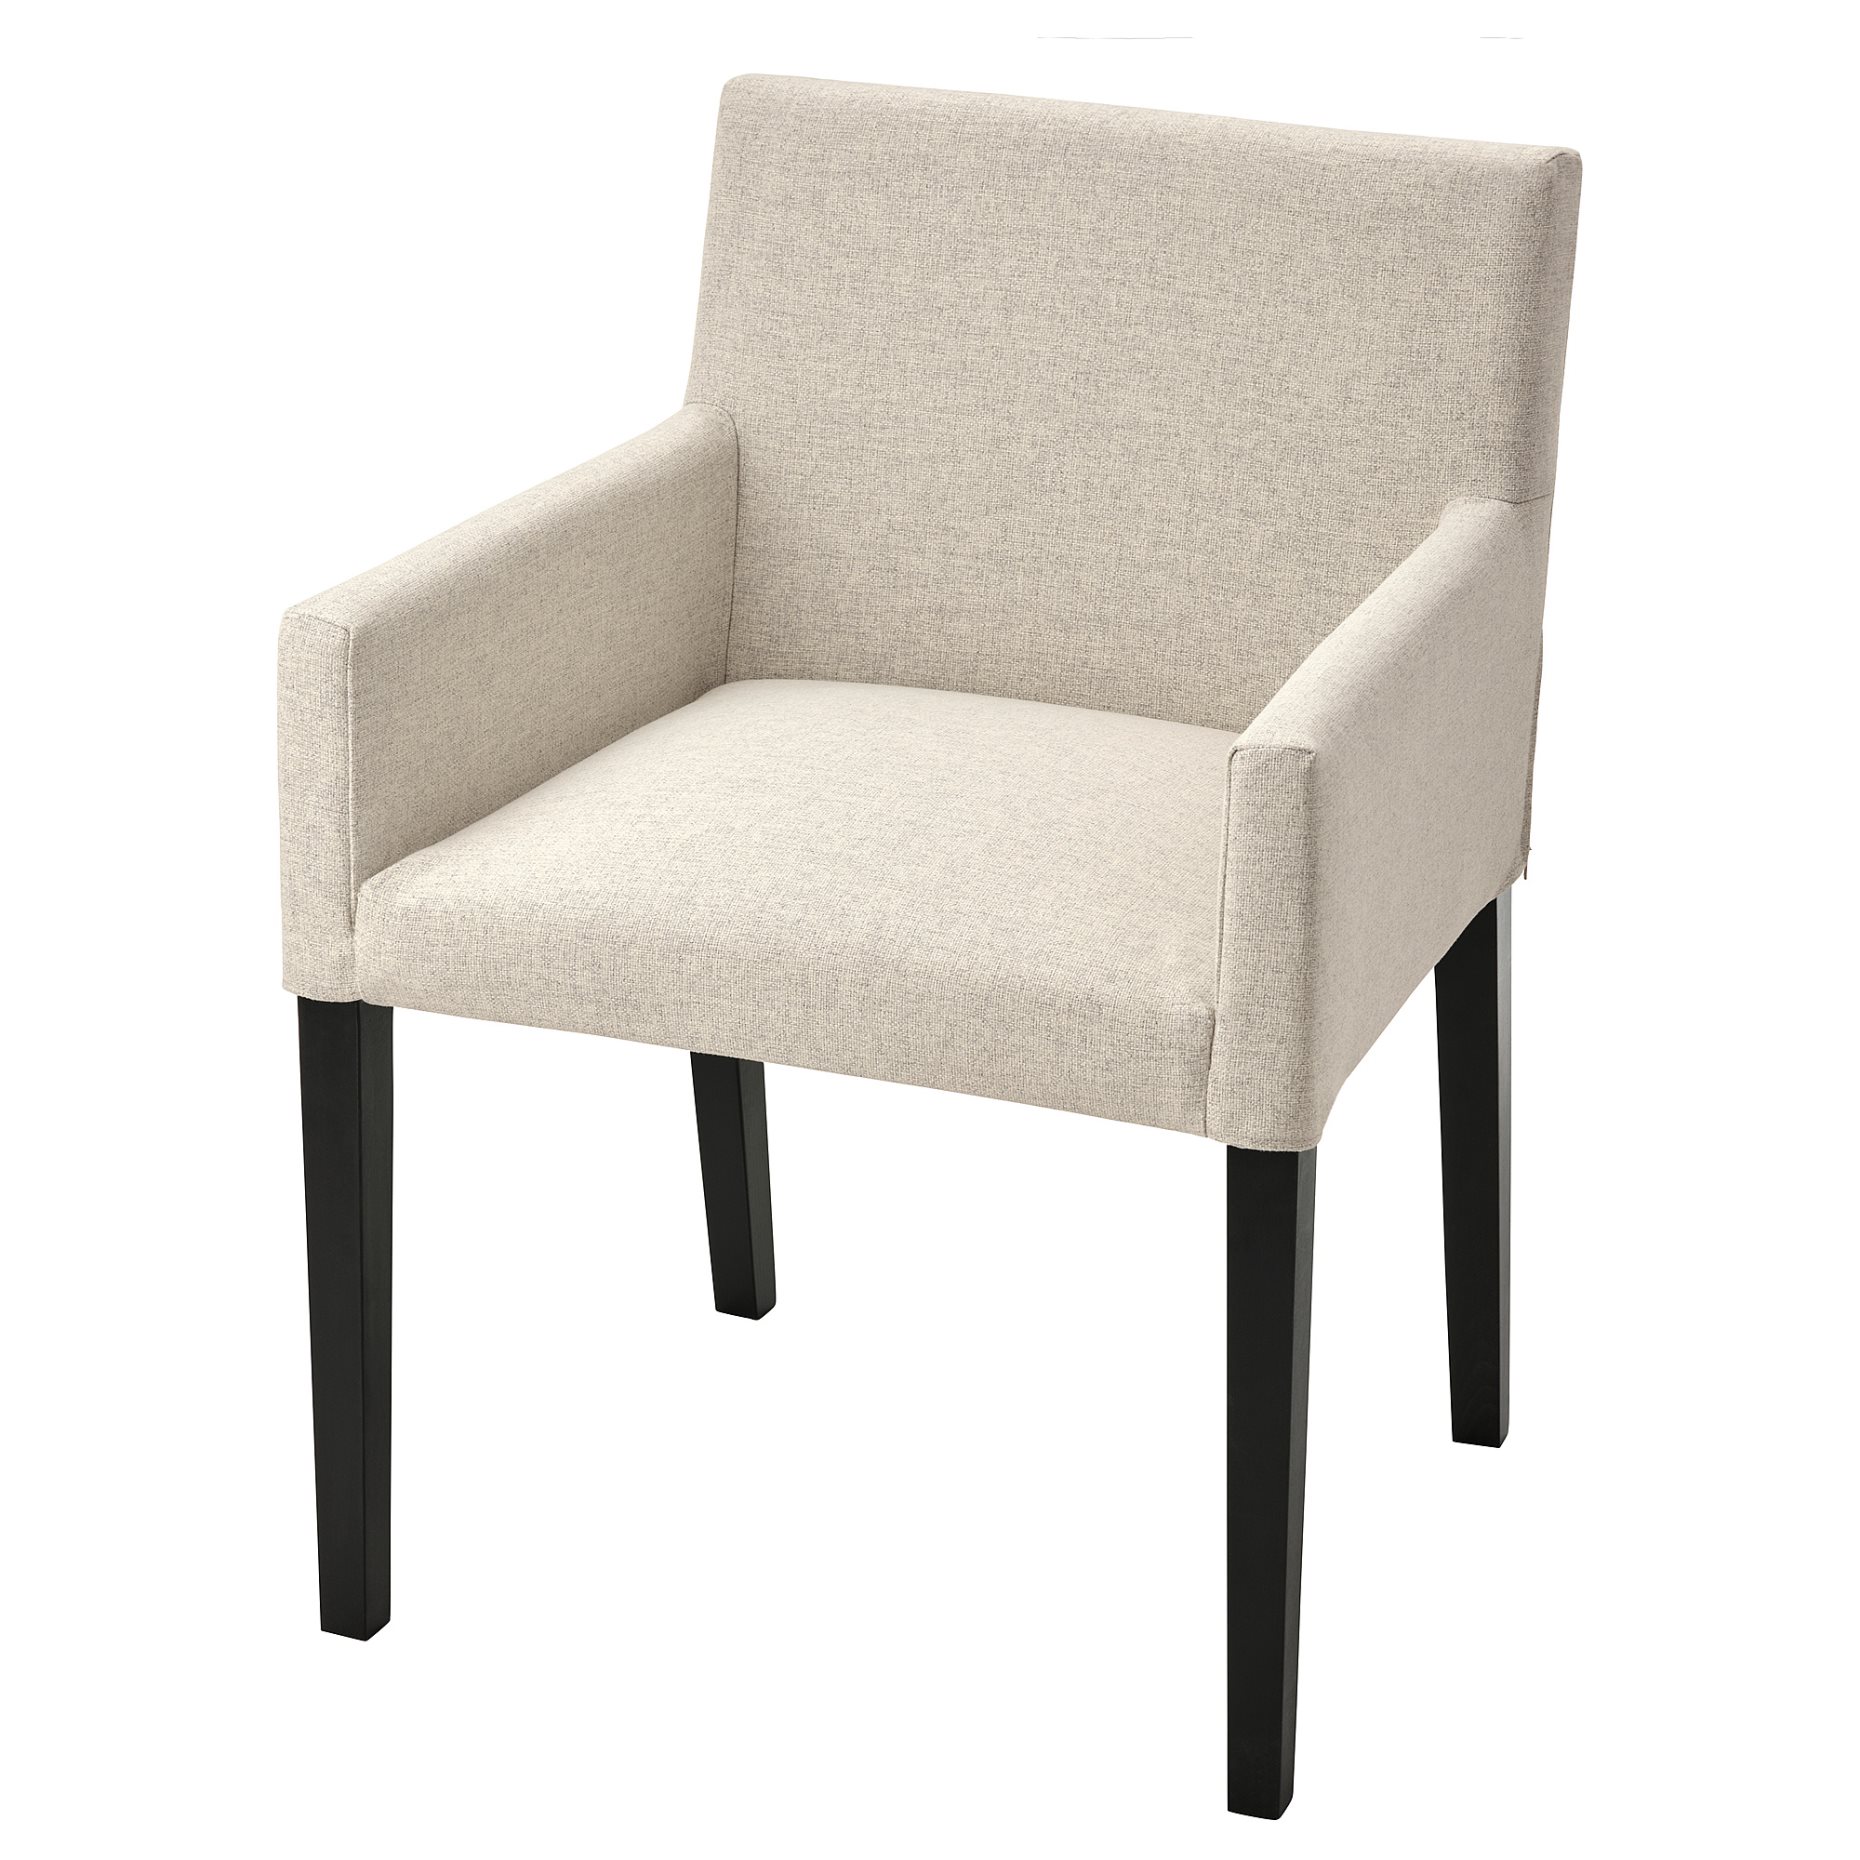 MÅRENÄS, chair with armrests, 795.143.89